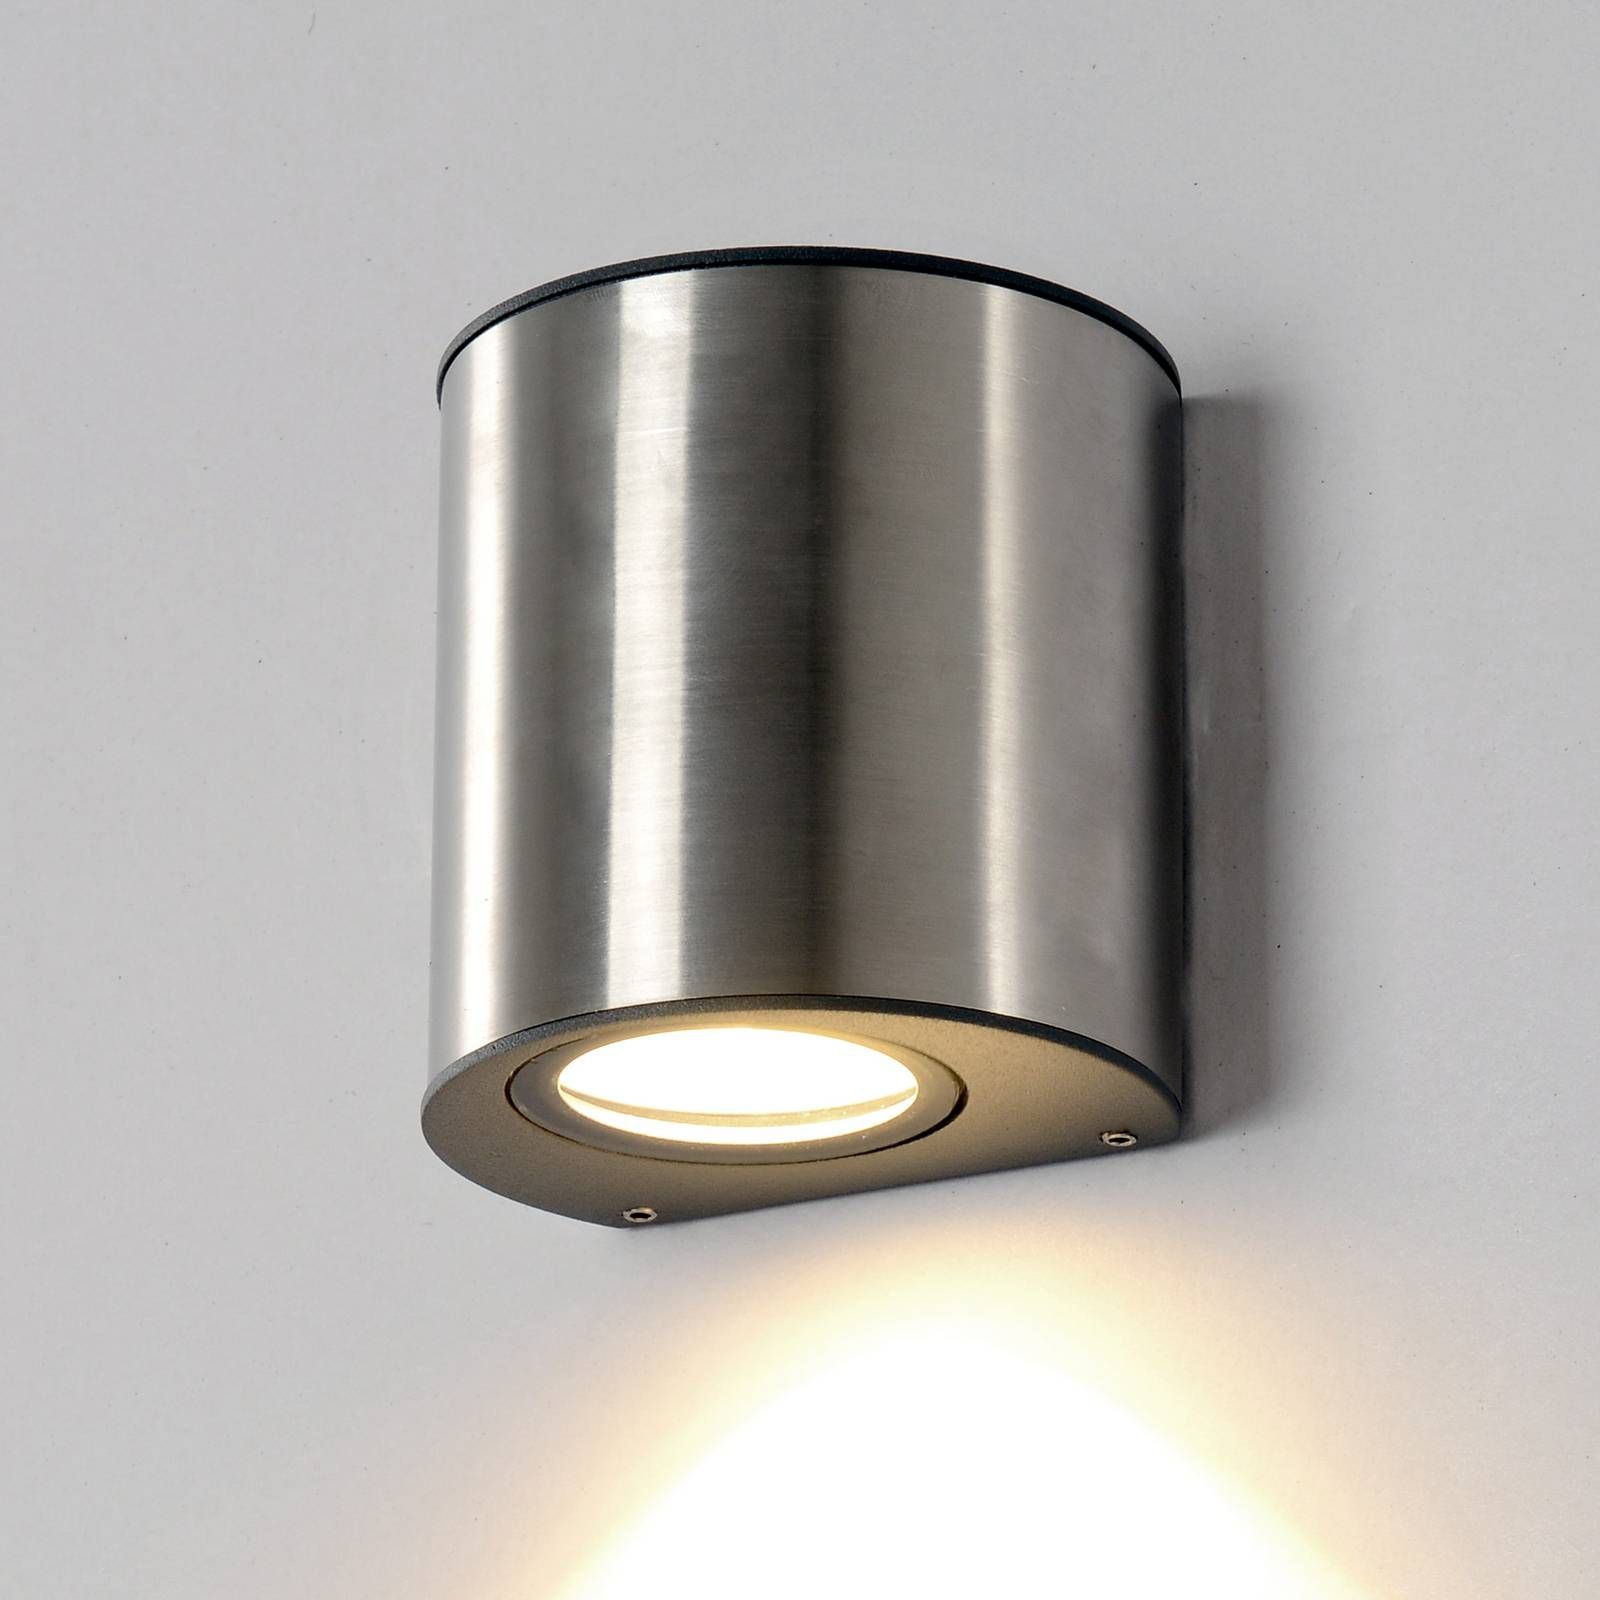 Eco-Light Nástenné LED svetlo Ilumi pre vonkajší priestor, ušľachtilá oceľ, 6W, L: 9.5 cm, K: 10cm